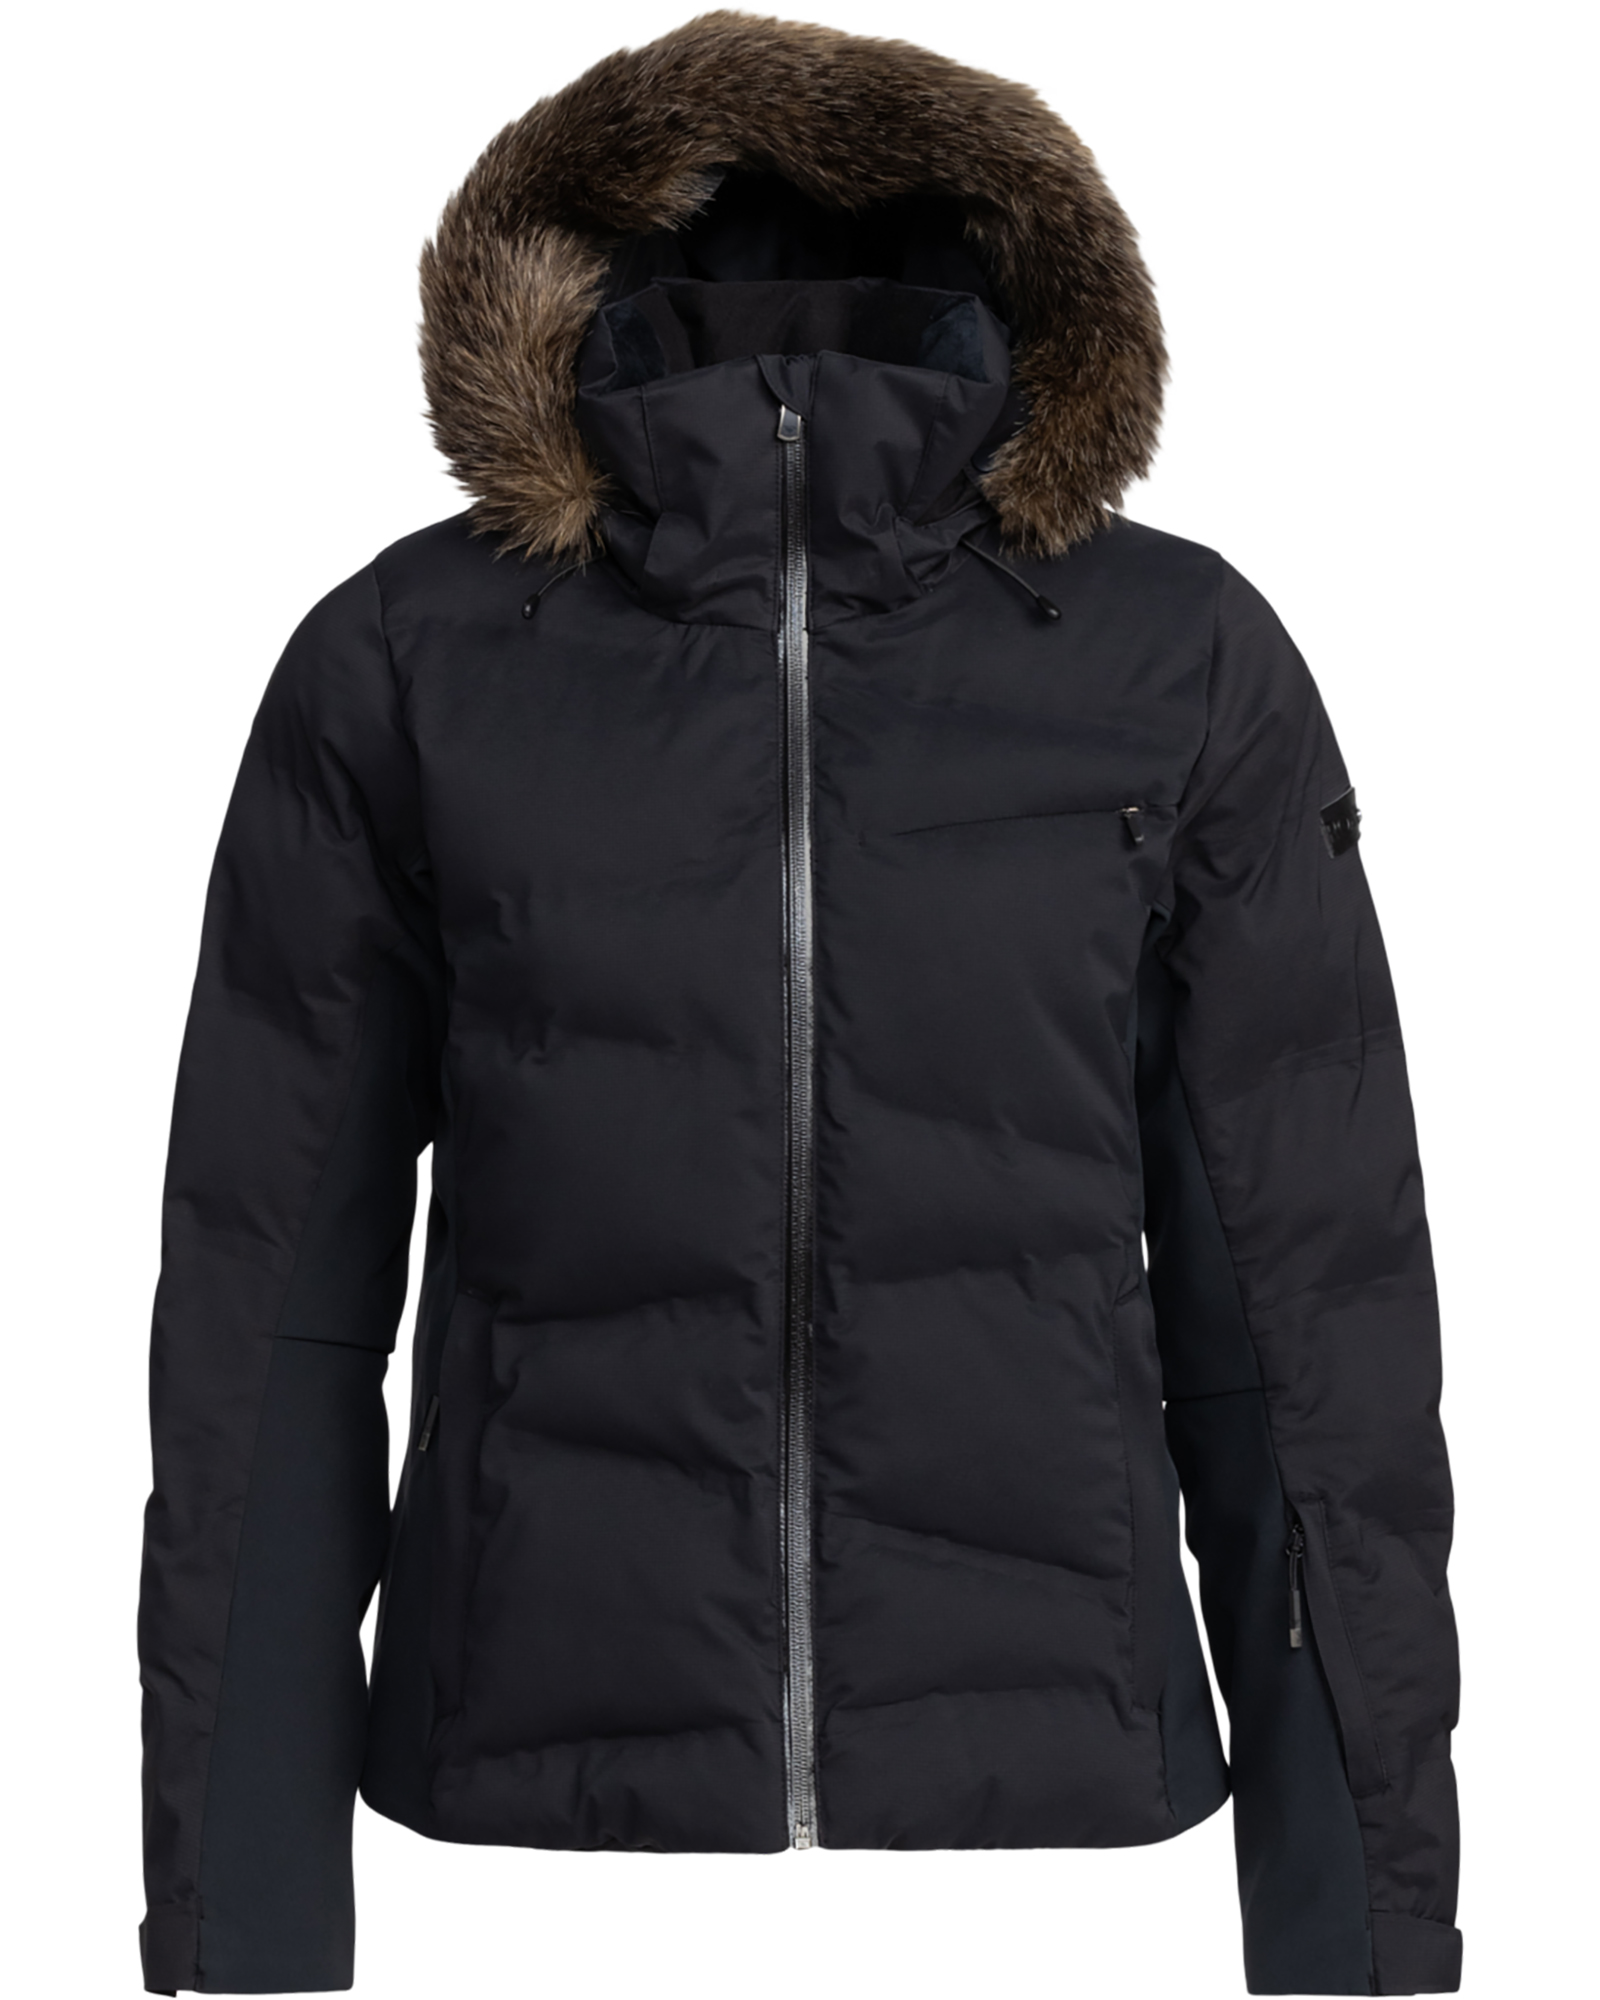 Roxy Snowstorm Women’s Jacket - True Black XL